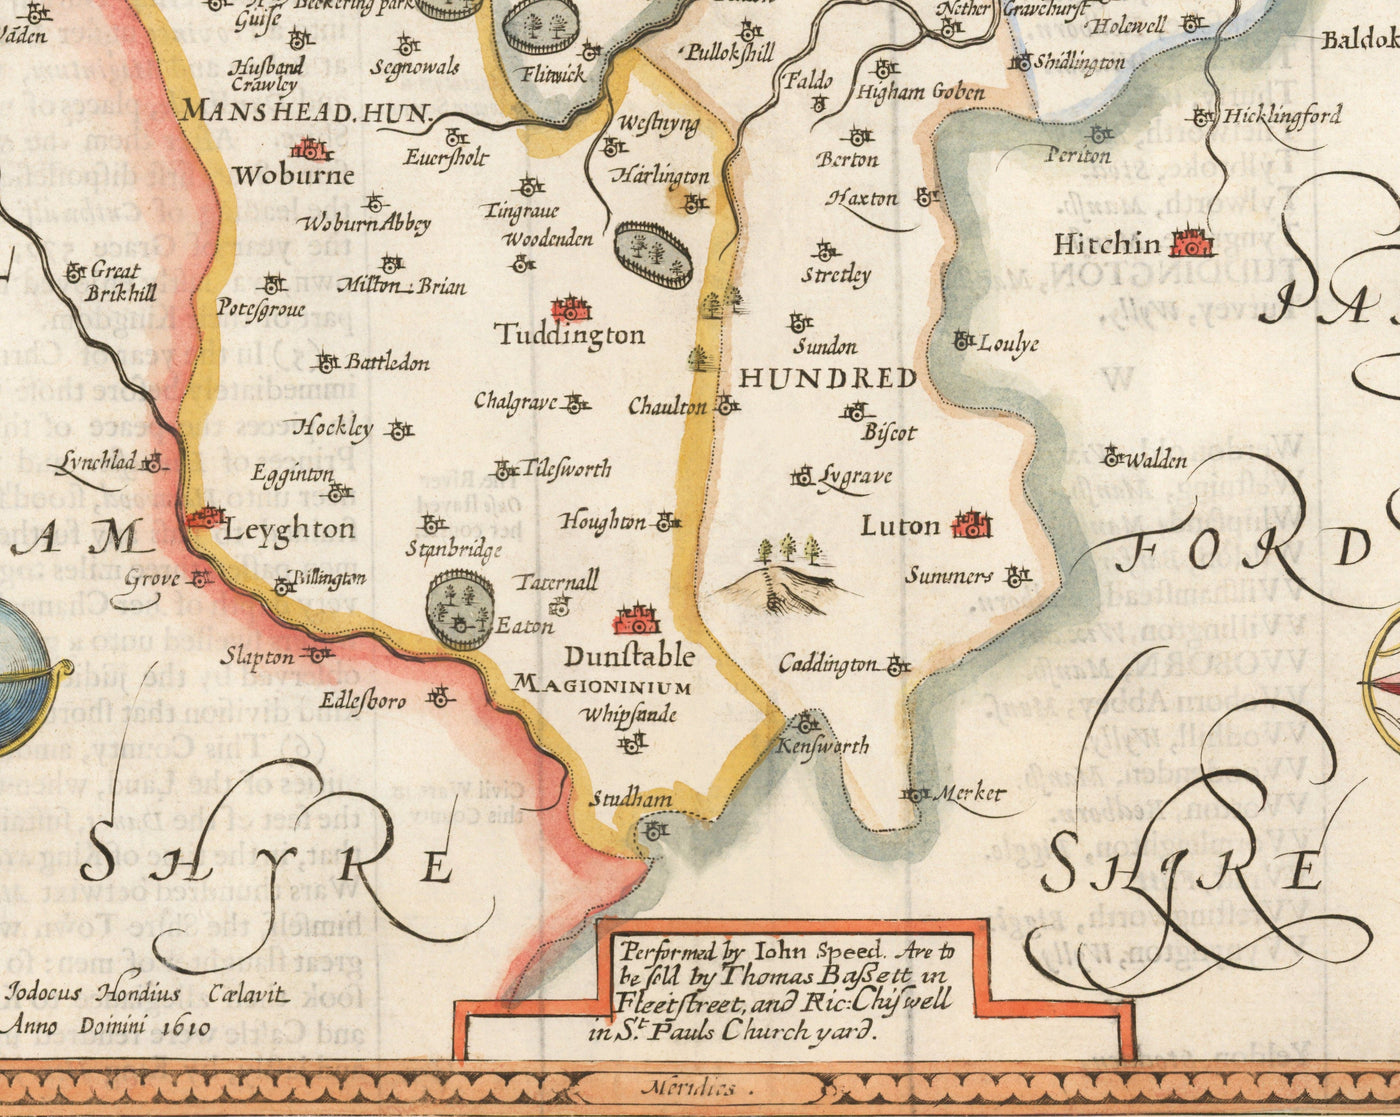 Alte Karte von Bedfordshire 1611 von John Speed - Bedford, Luton, Dunstable, St Neots, Leighton Buzzard